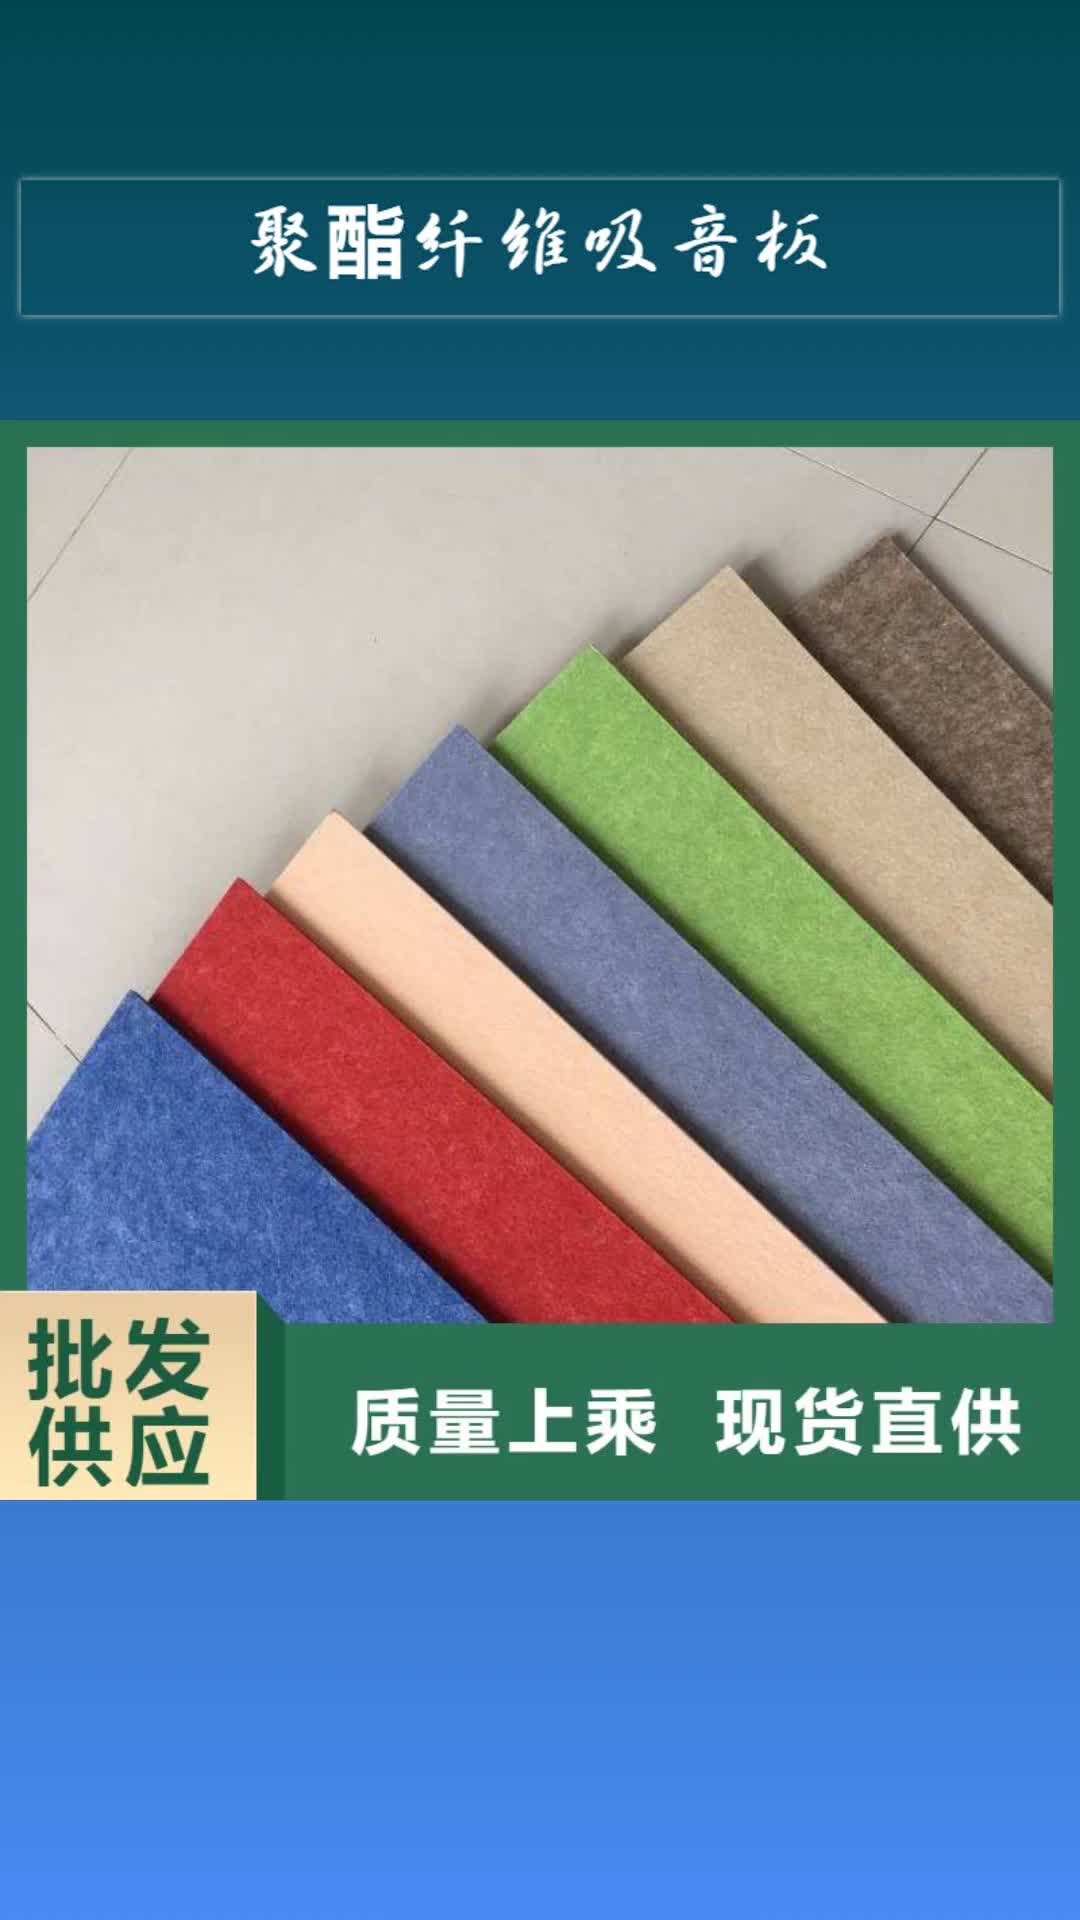 北京 聚酯纤维吸音板【生态木长城板】细节展示